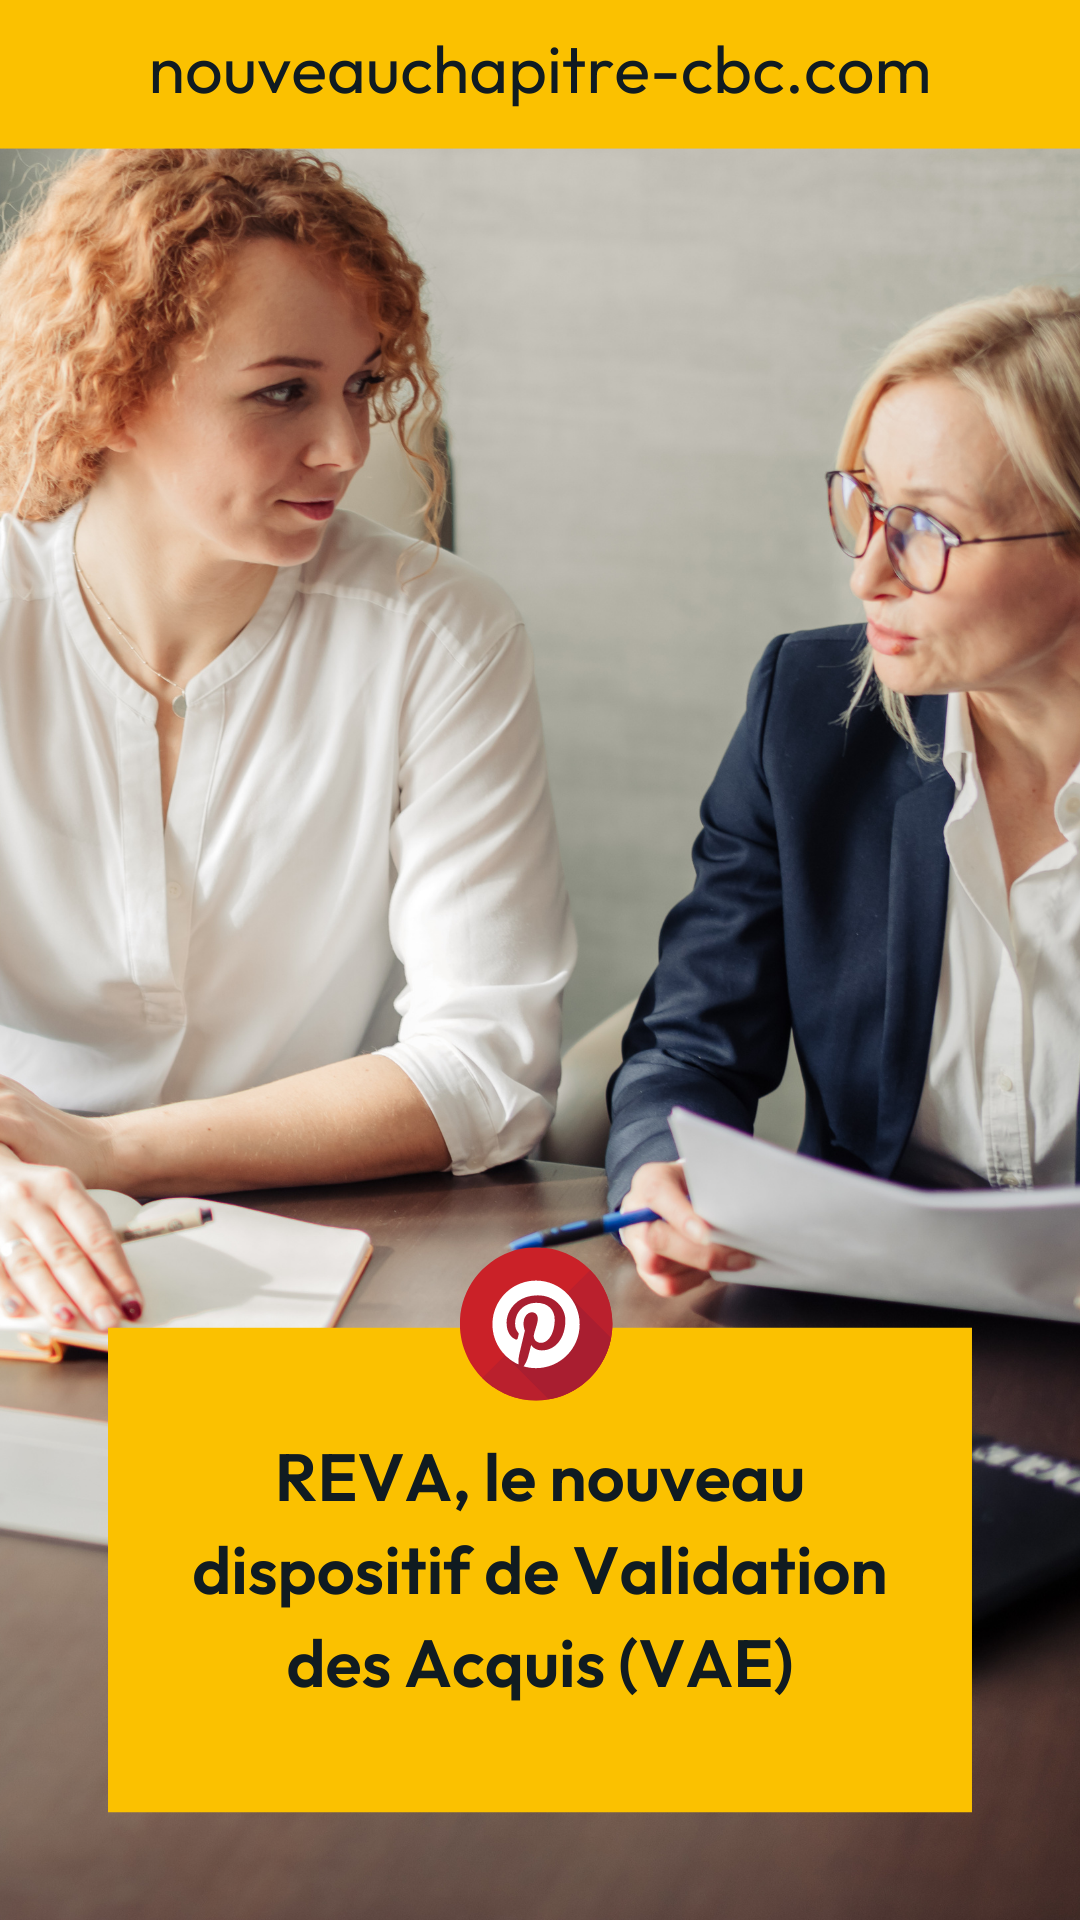 REVA, le nouveau dispositif de Validation des Acquis (VAE)